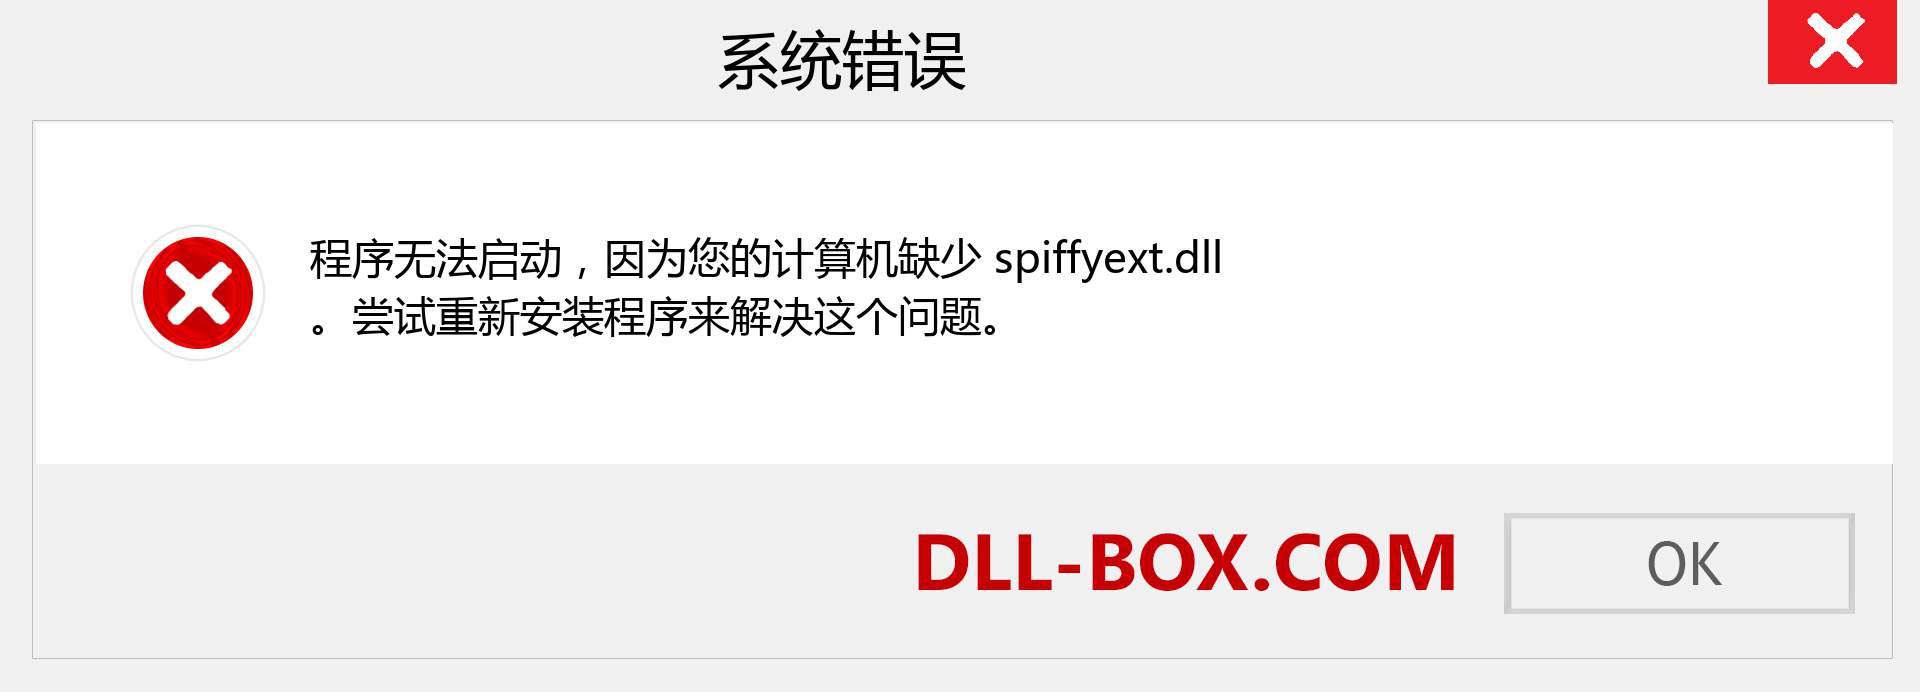 spiffyext.dll 文件丢失？。 适用于 Windows 7、8、10 的下载 - 修复 Windows、照片、图像上的 spiffyext dll 丢失错误